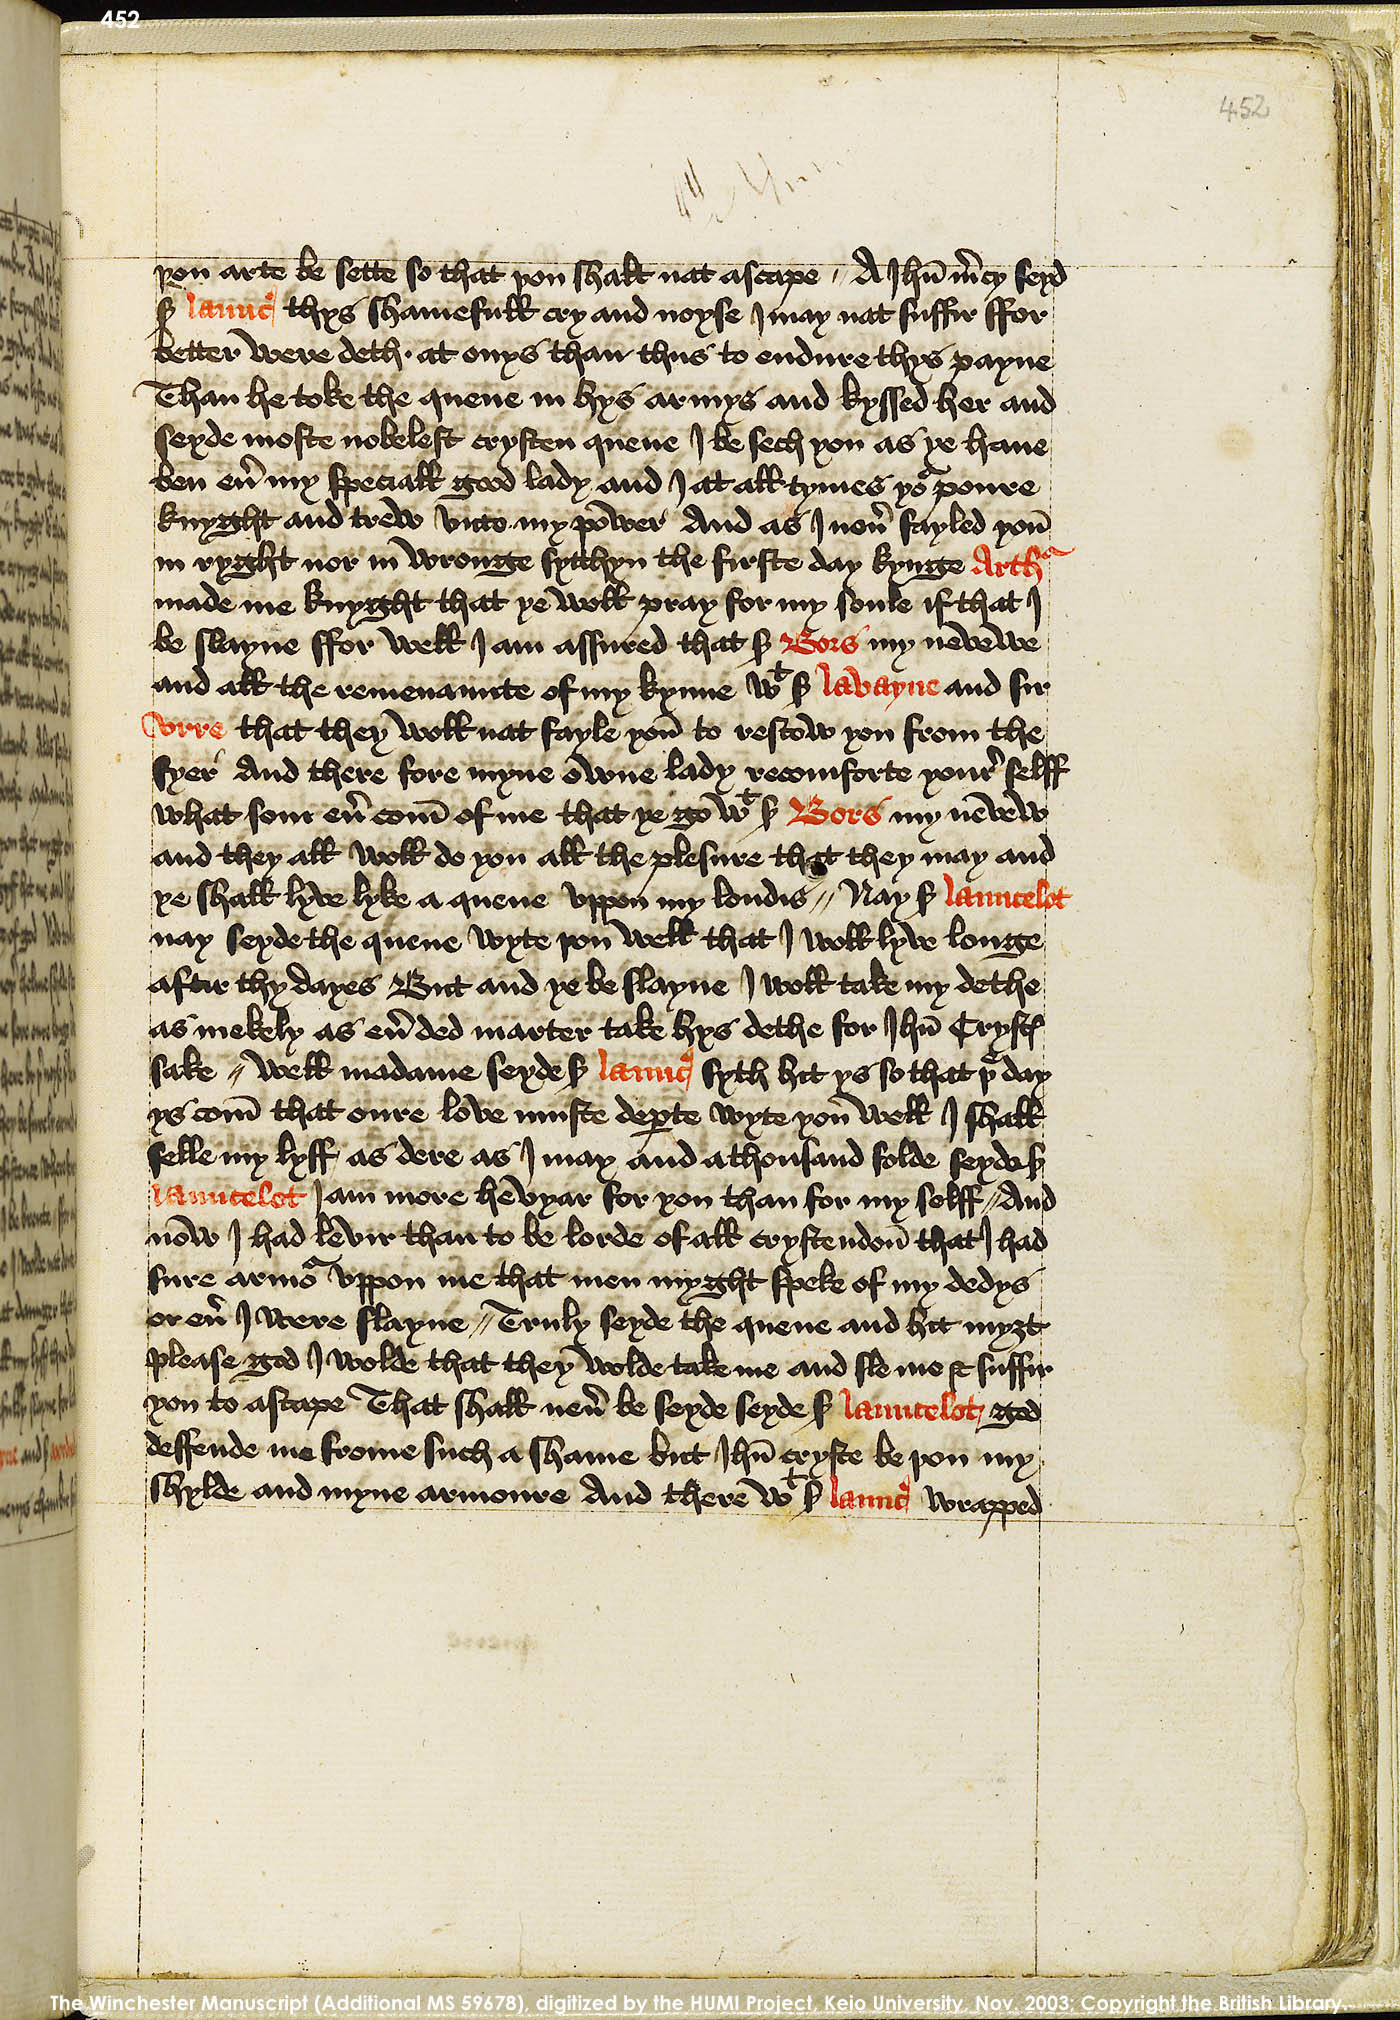 Folio 452r